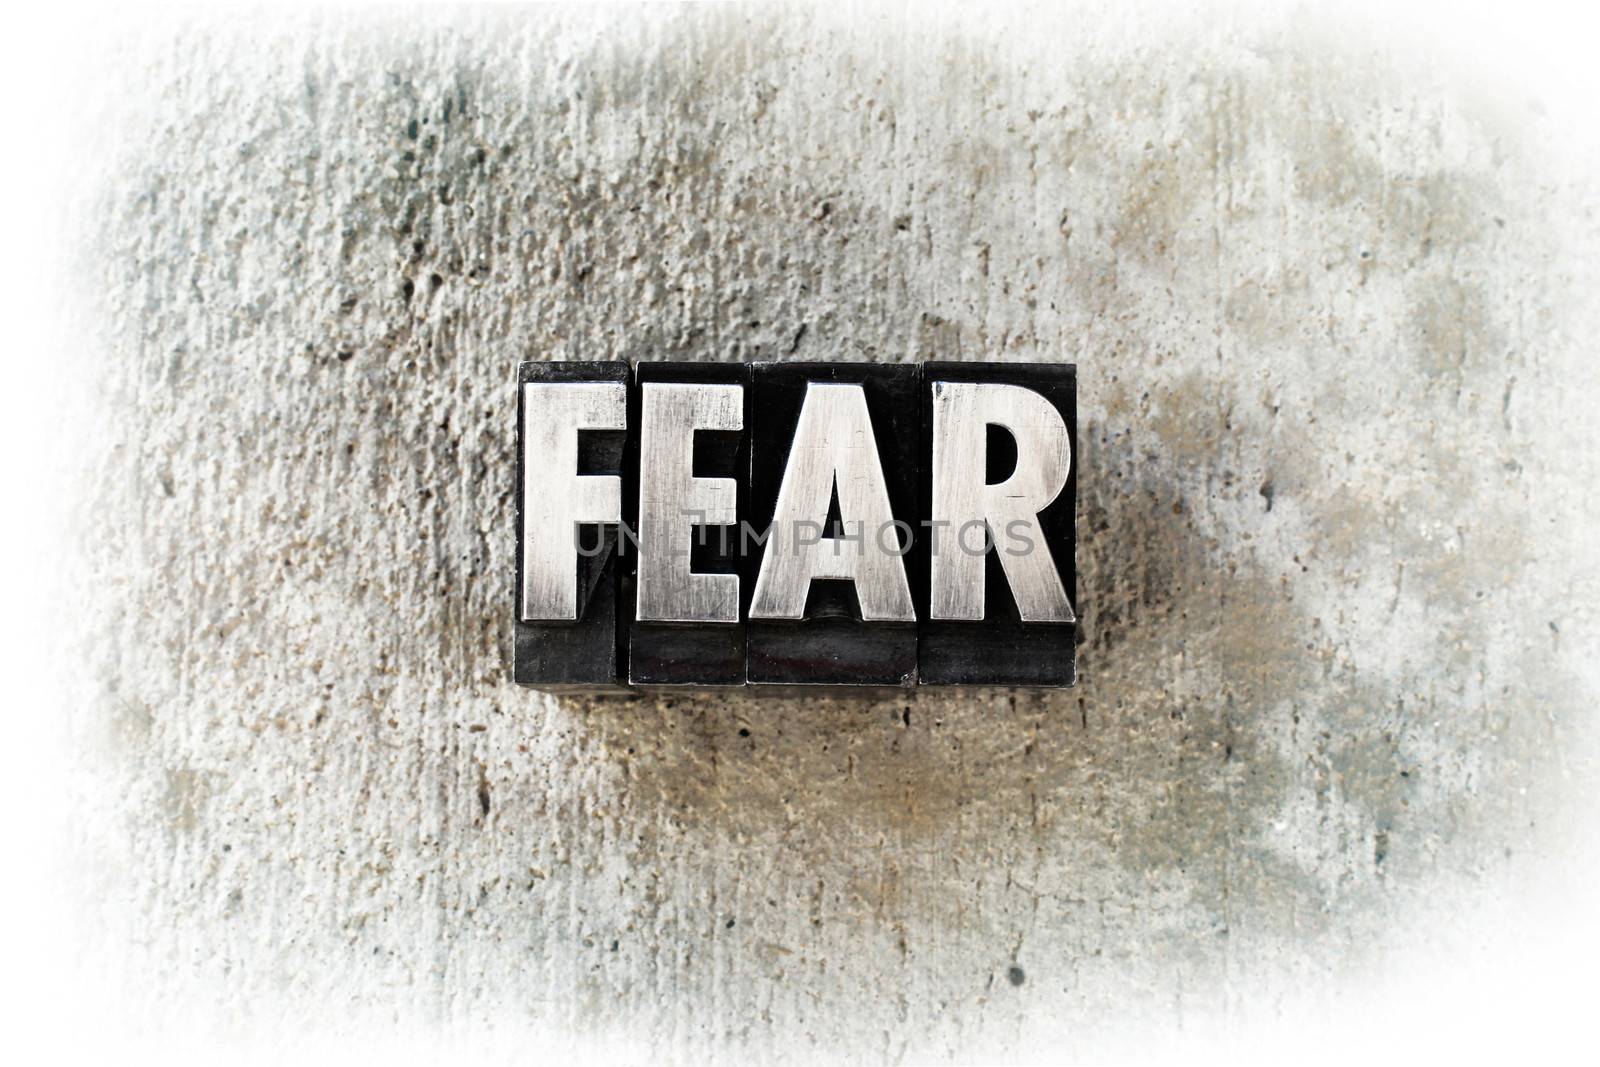 The word "FEAR" written in old vintage letterpress type.